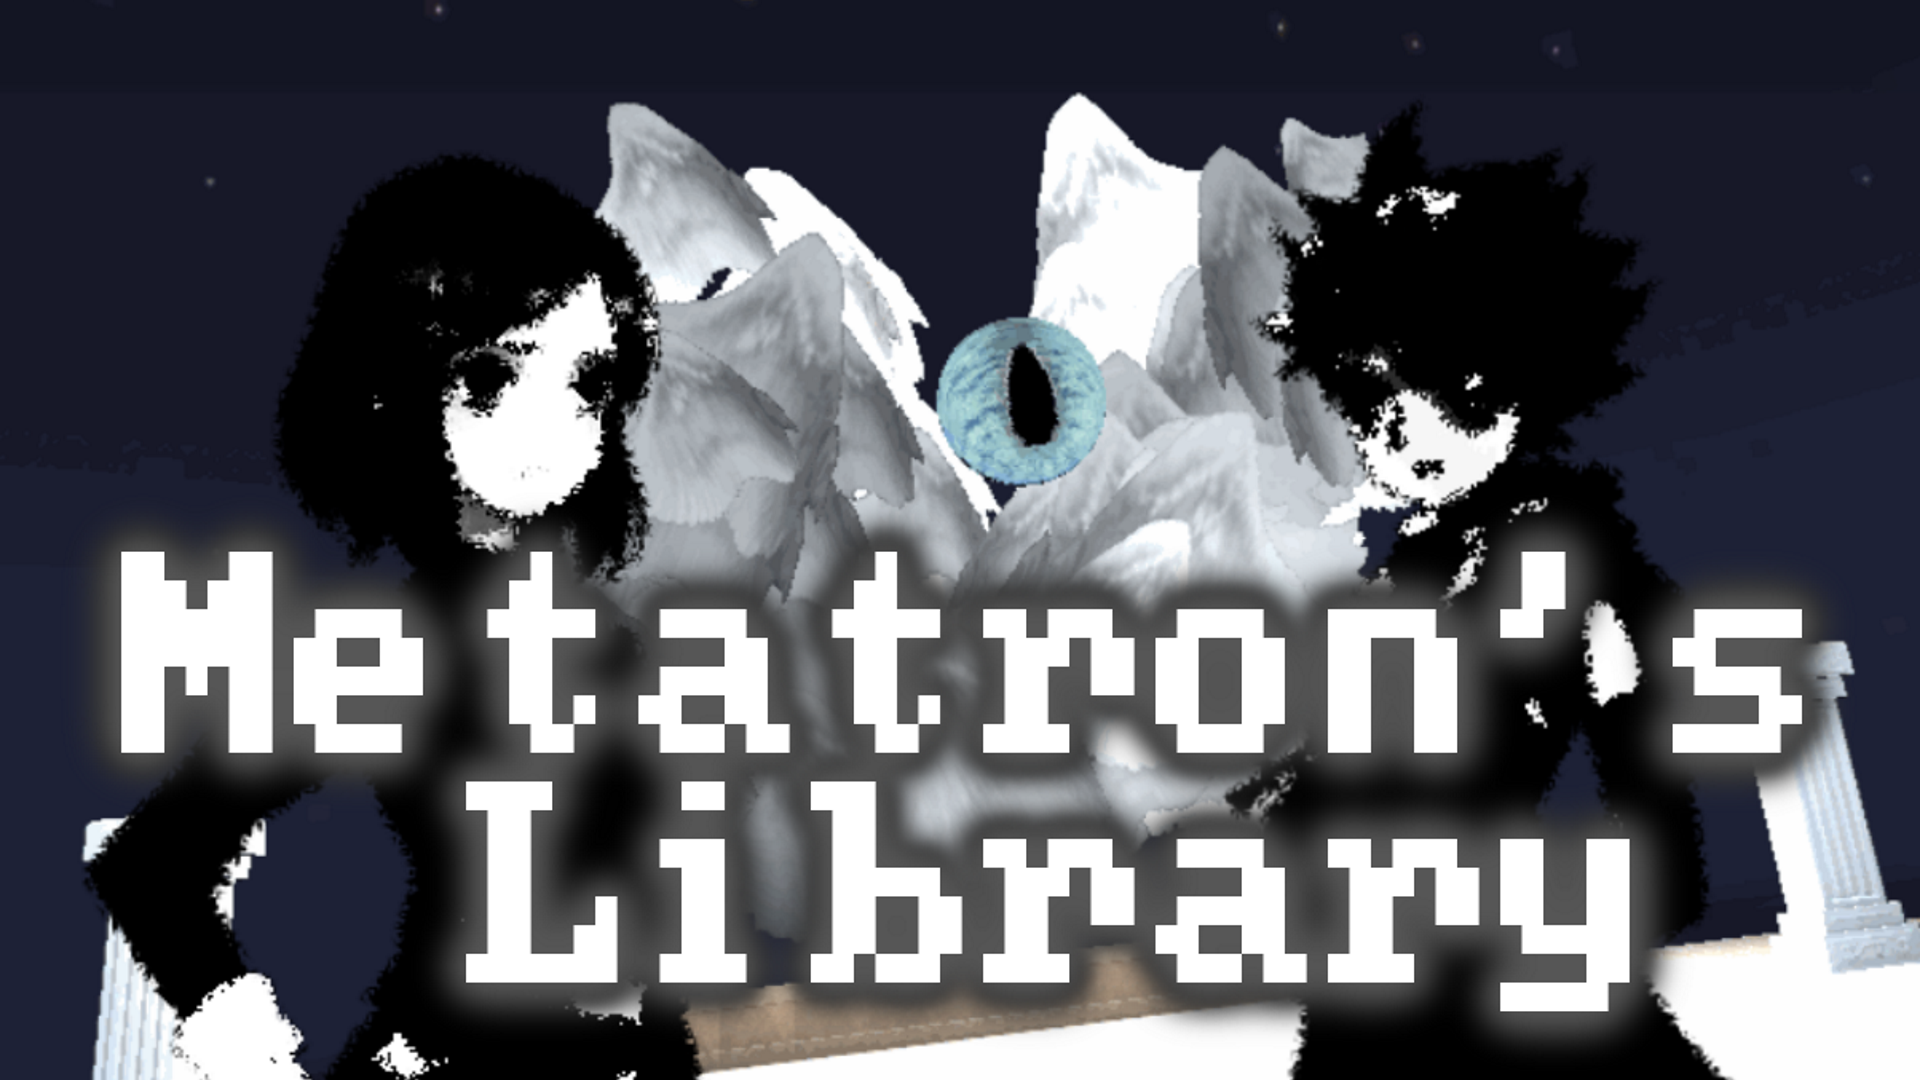 Metatron's Library